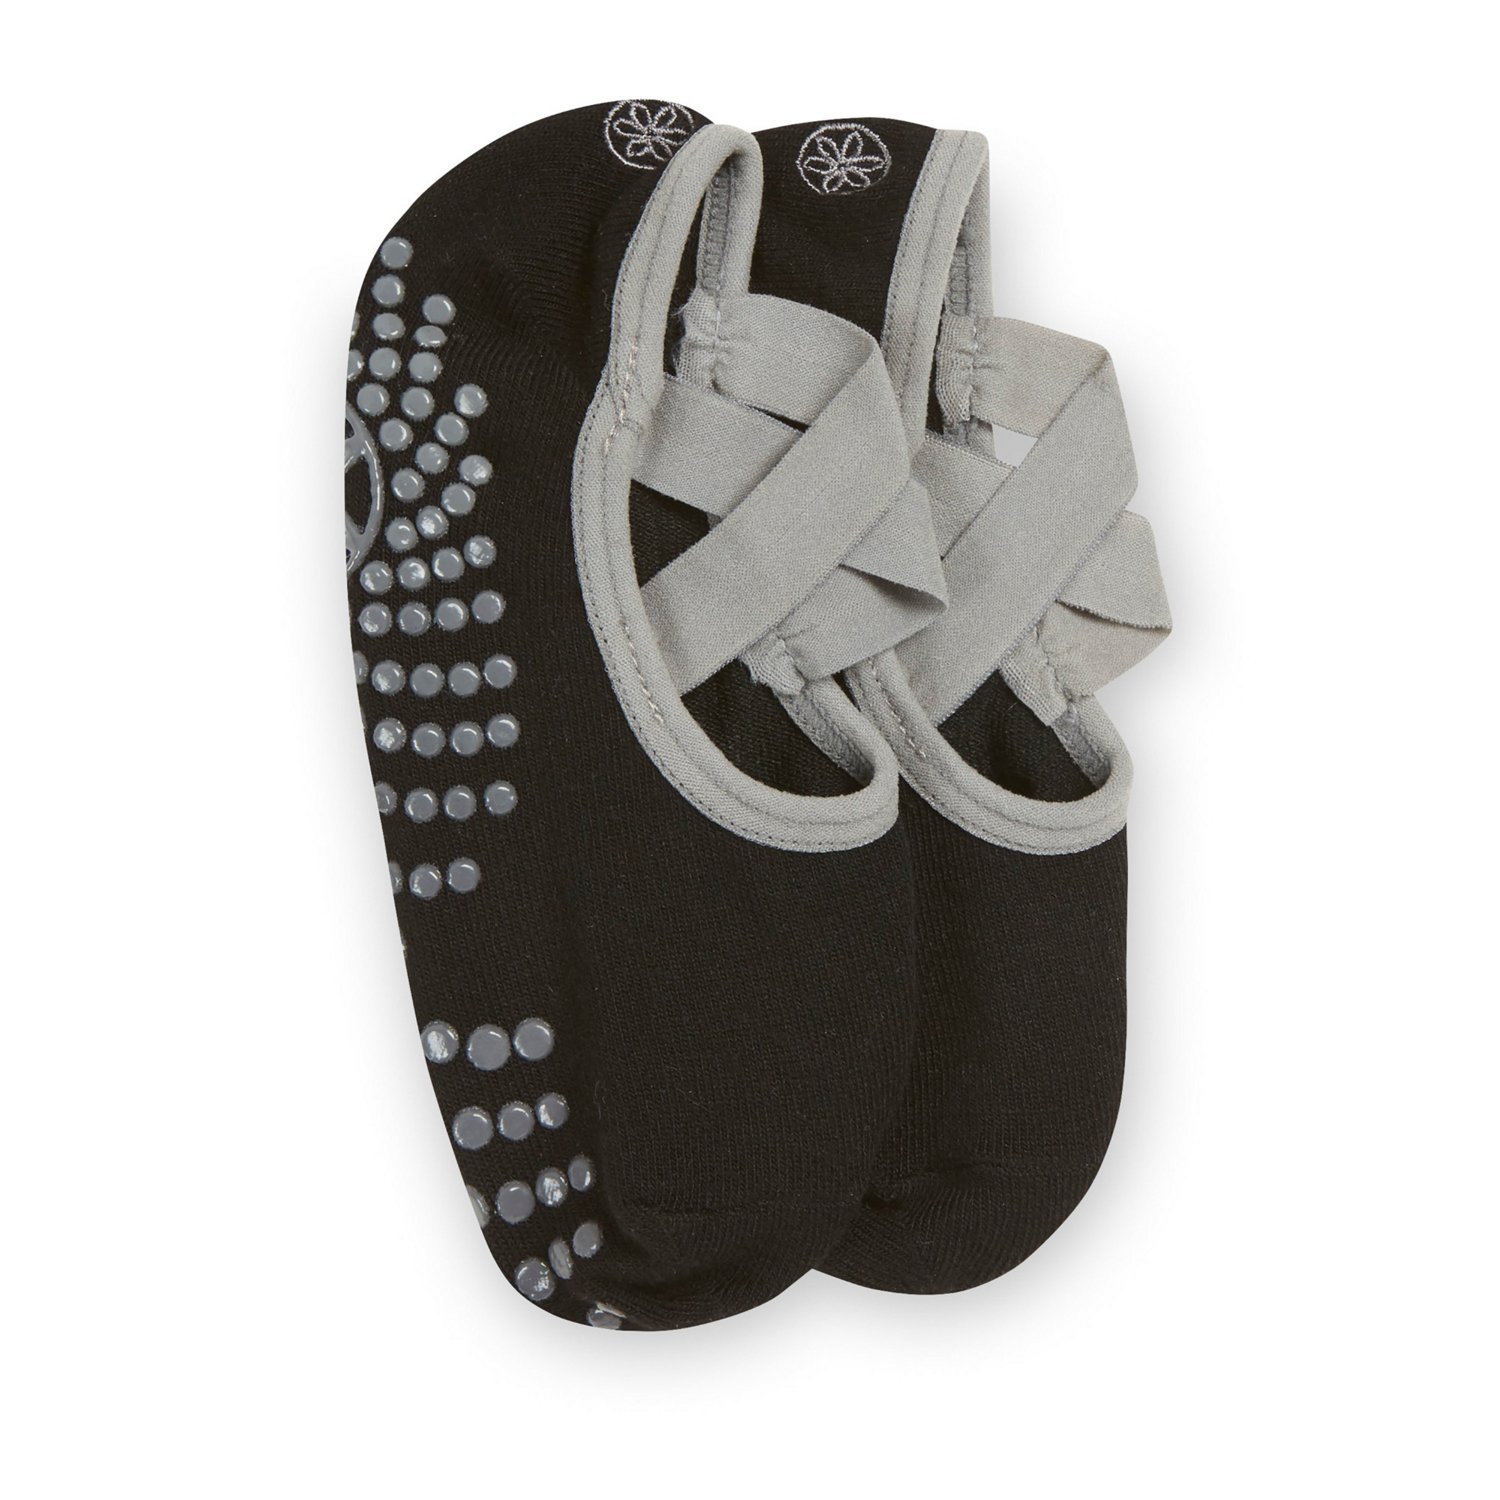 Gaiam Yoga Barre Socks 2 Pack